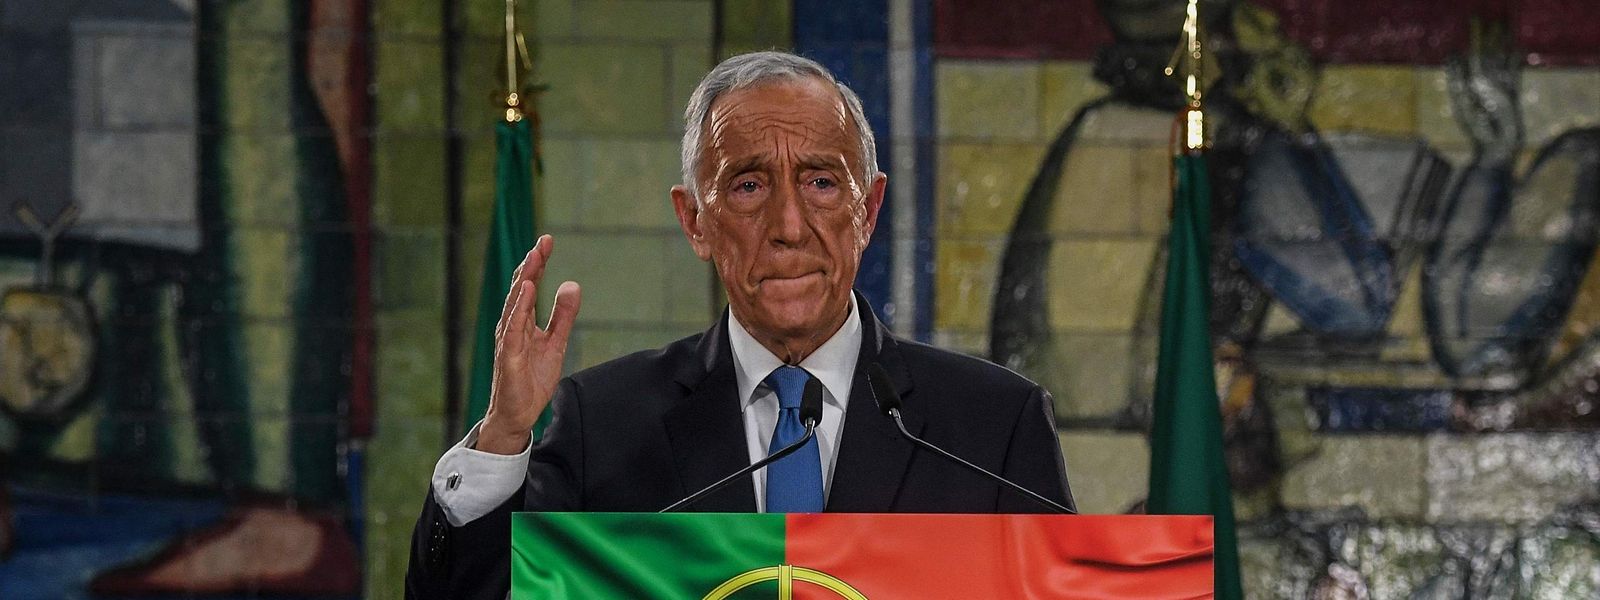 Der portugiesische Präsident Marcelo Rebelo de Sousa ist beim Volk und auch über Parteigrenzen hinweg äußert beliebt.